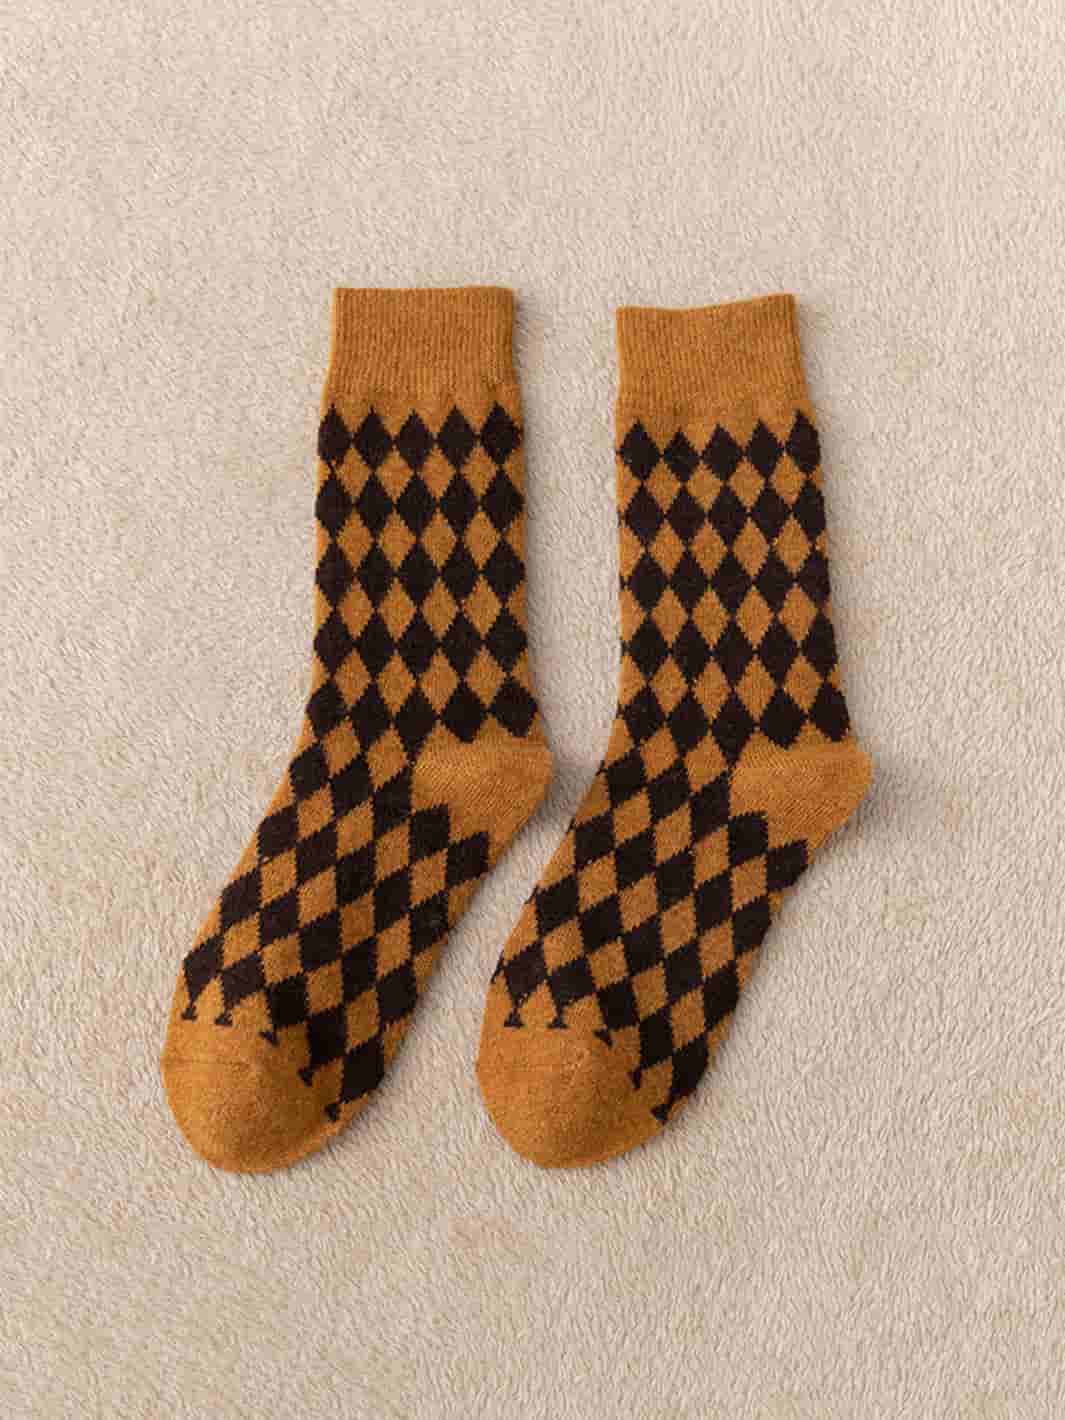 Retro cotton socks